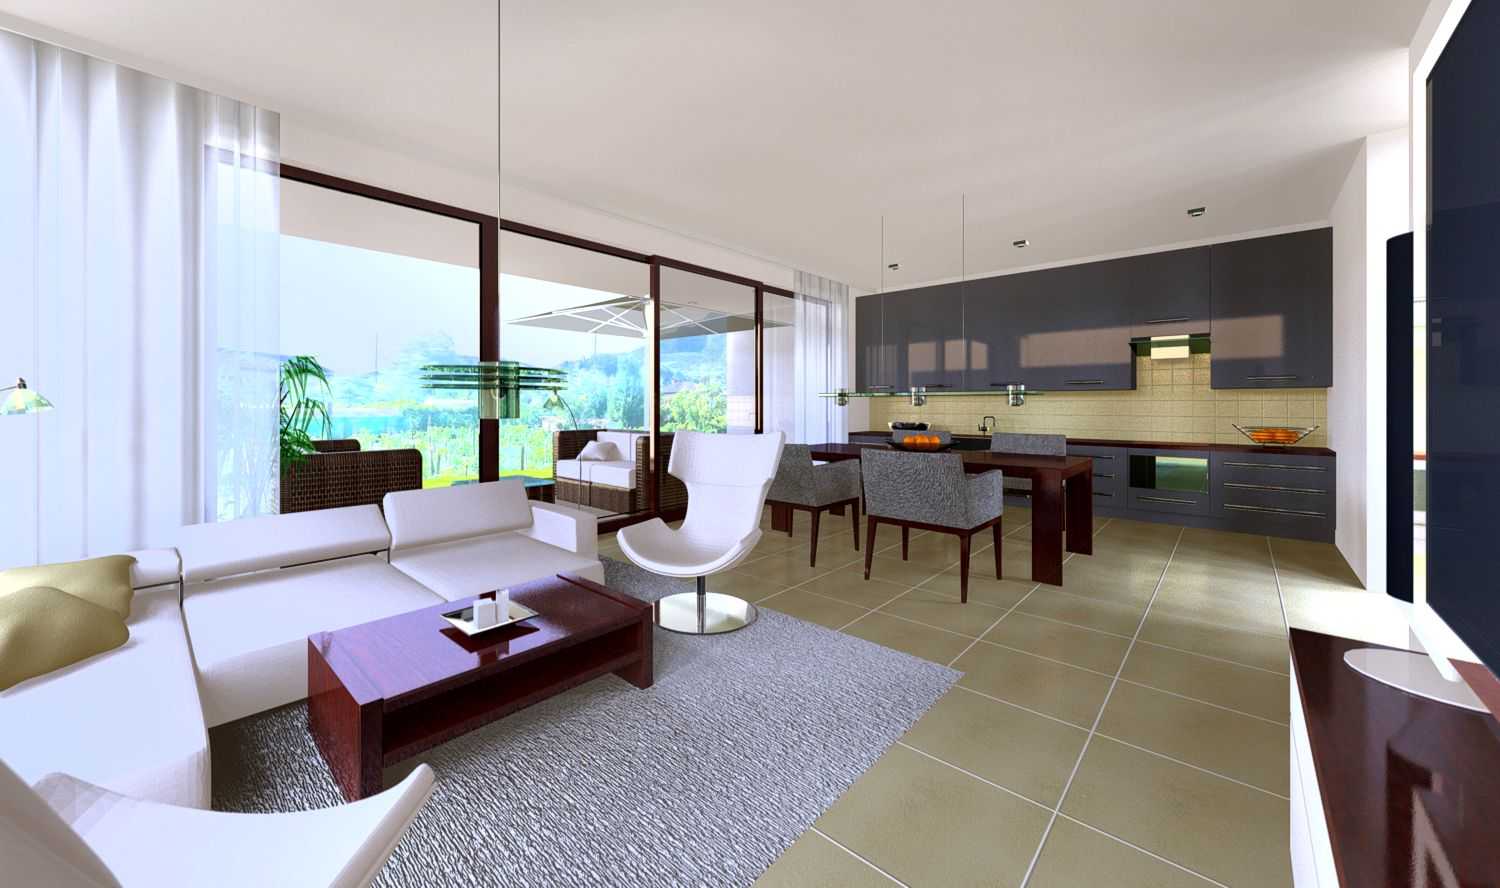 3D Innenraum Visualisierung für Neubau eines  Mehrfamilienhauses mit 5 Wohneinheiten, in Avegno / Schweiz, für timpresa soluzioni immobiliari (Jahr 2013)